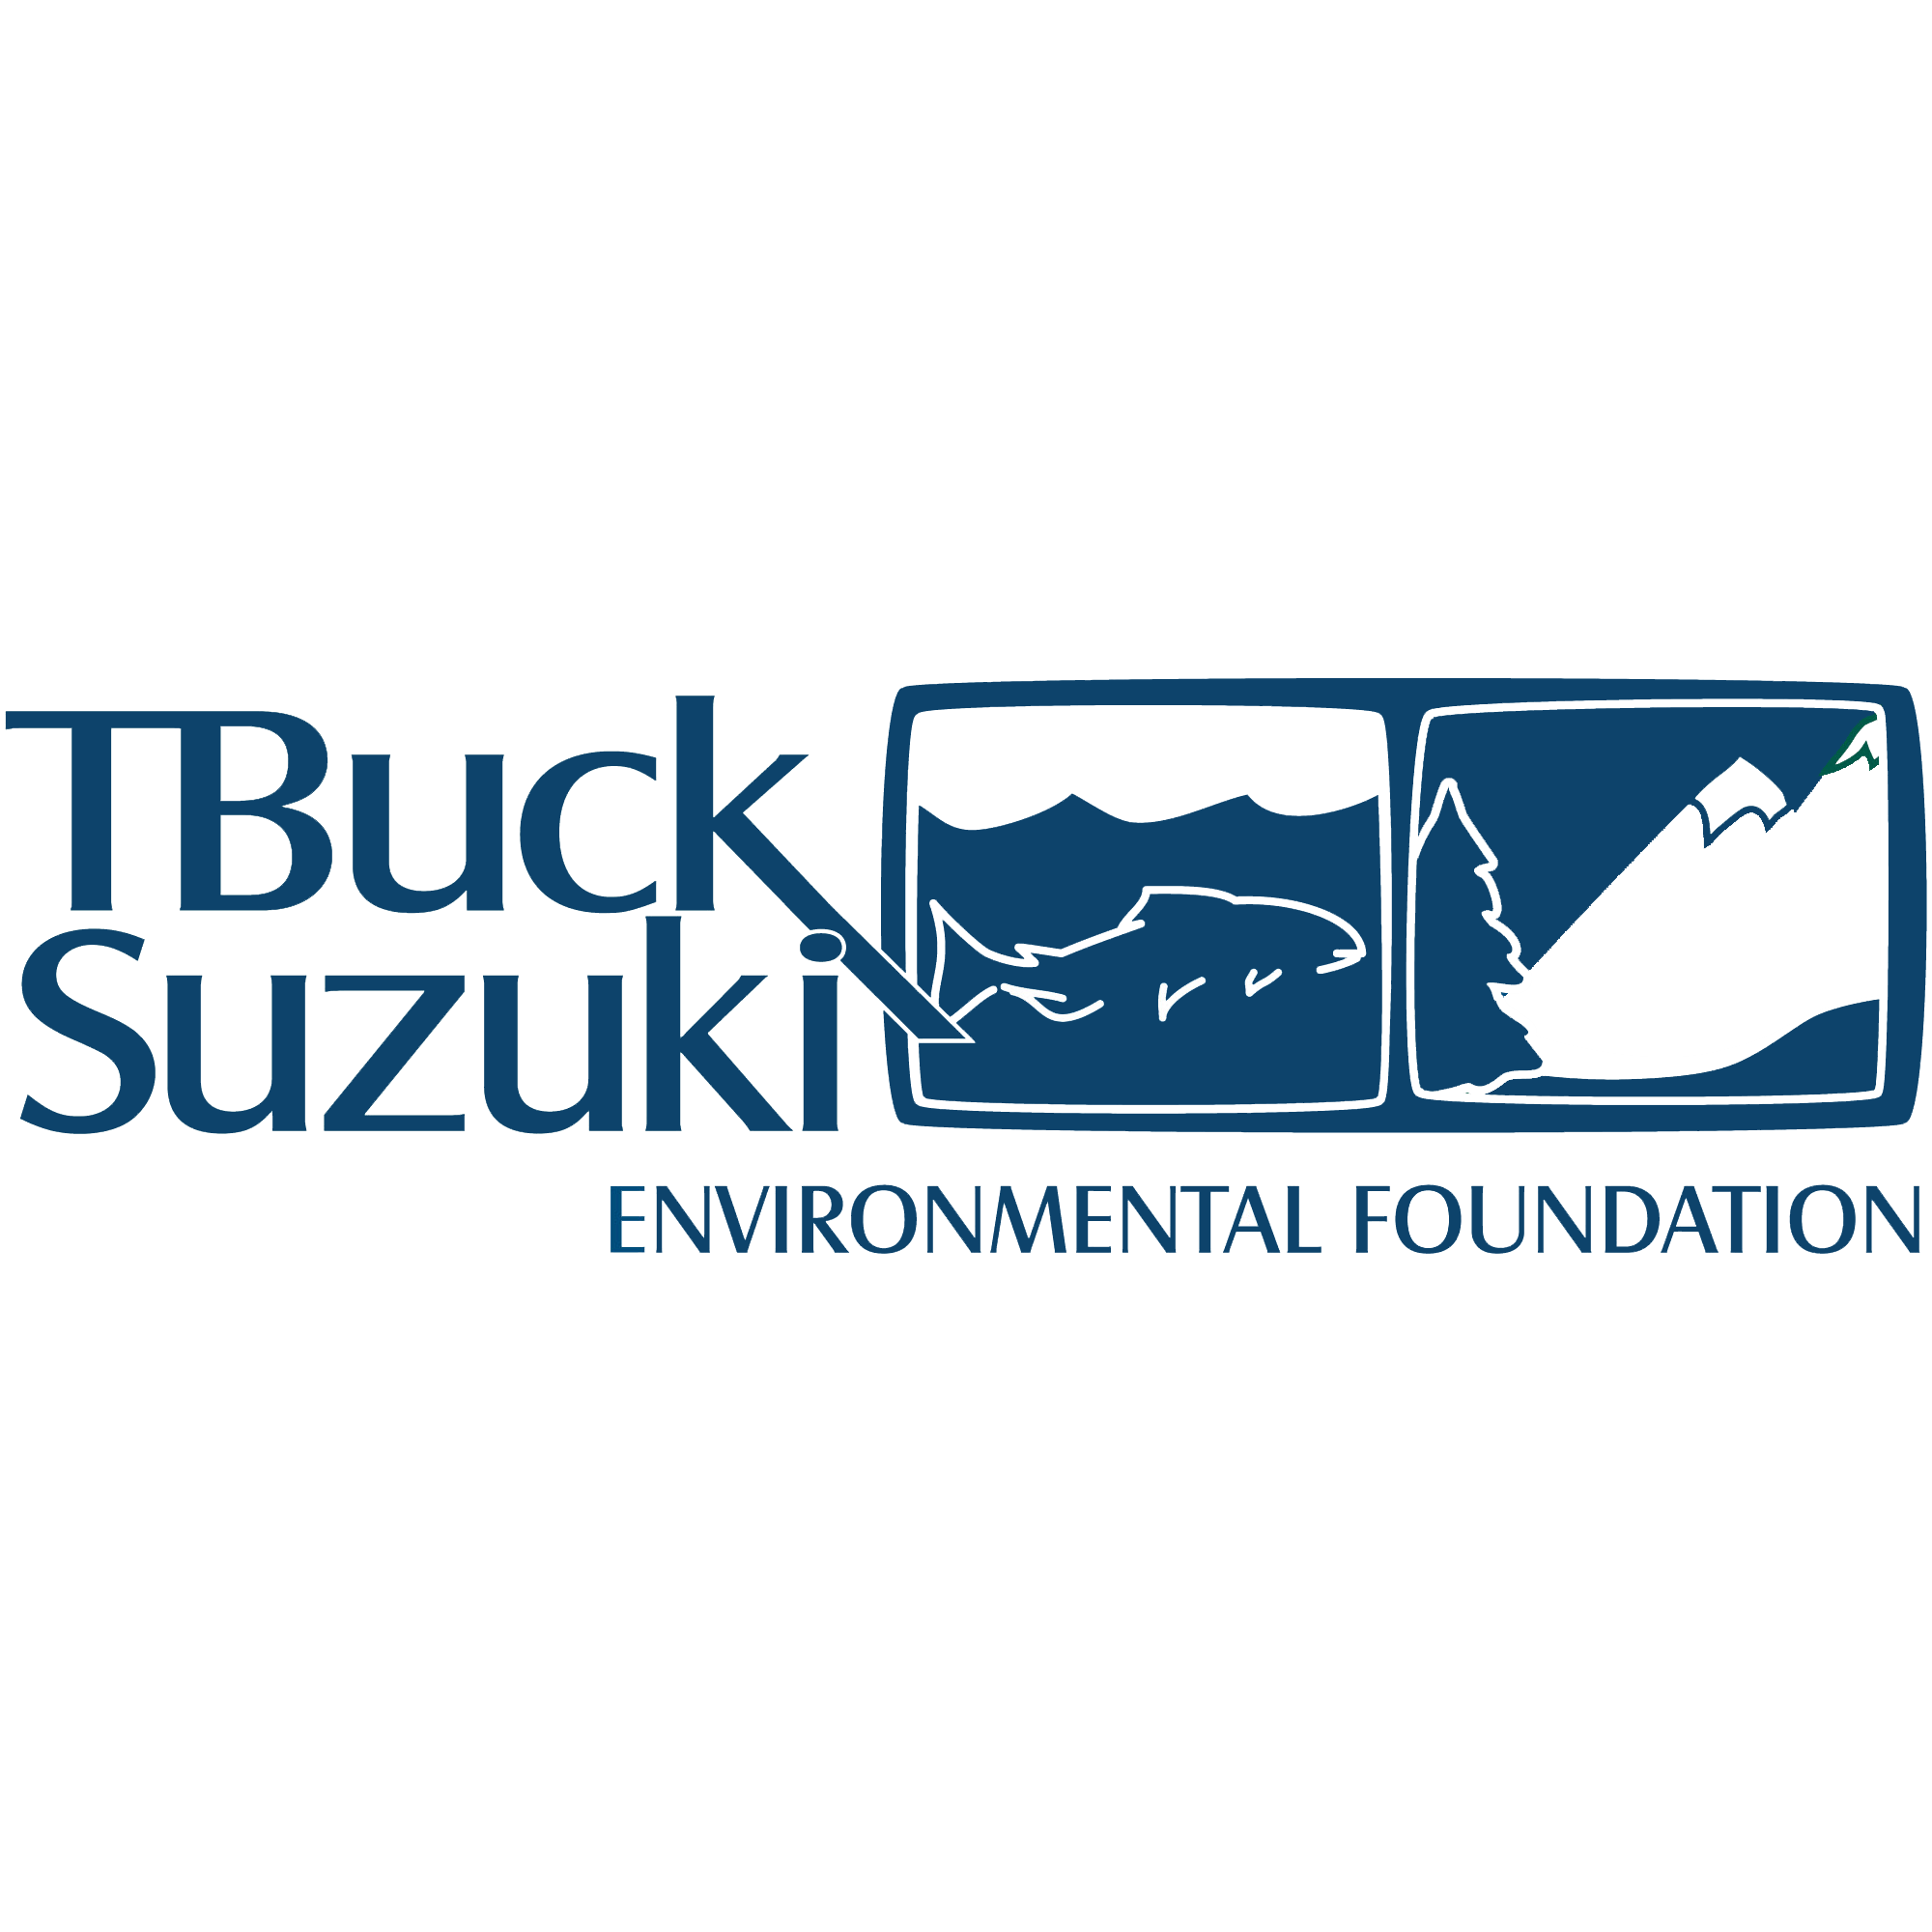 T. Buck Suzuki Foundation